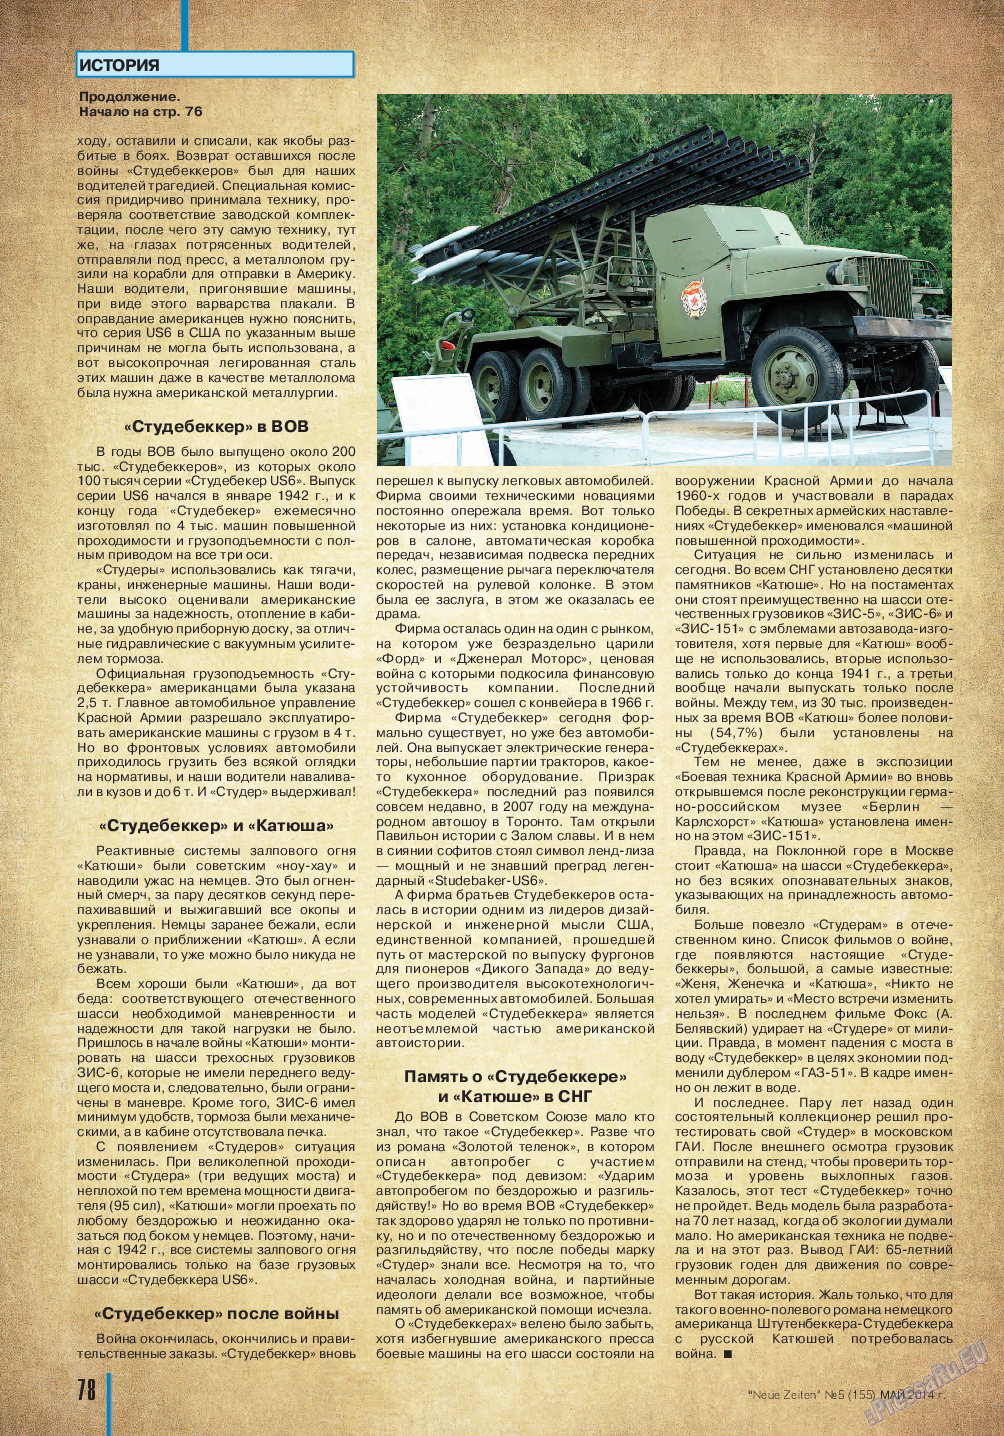 Neue Zeiten, журнал. 2014 №5 стр.78